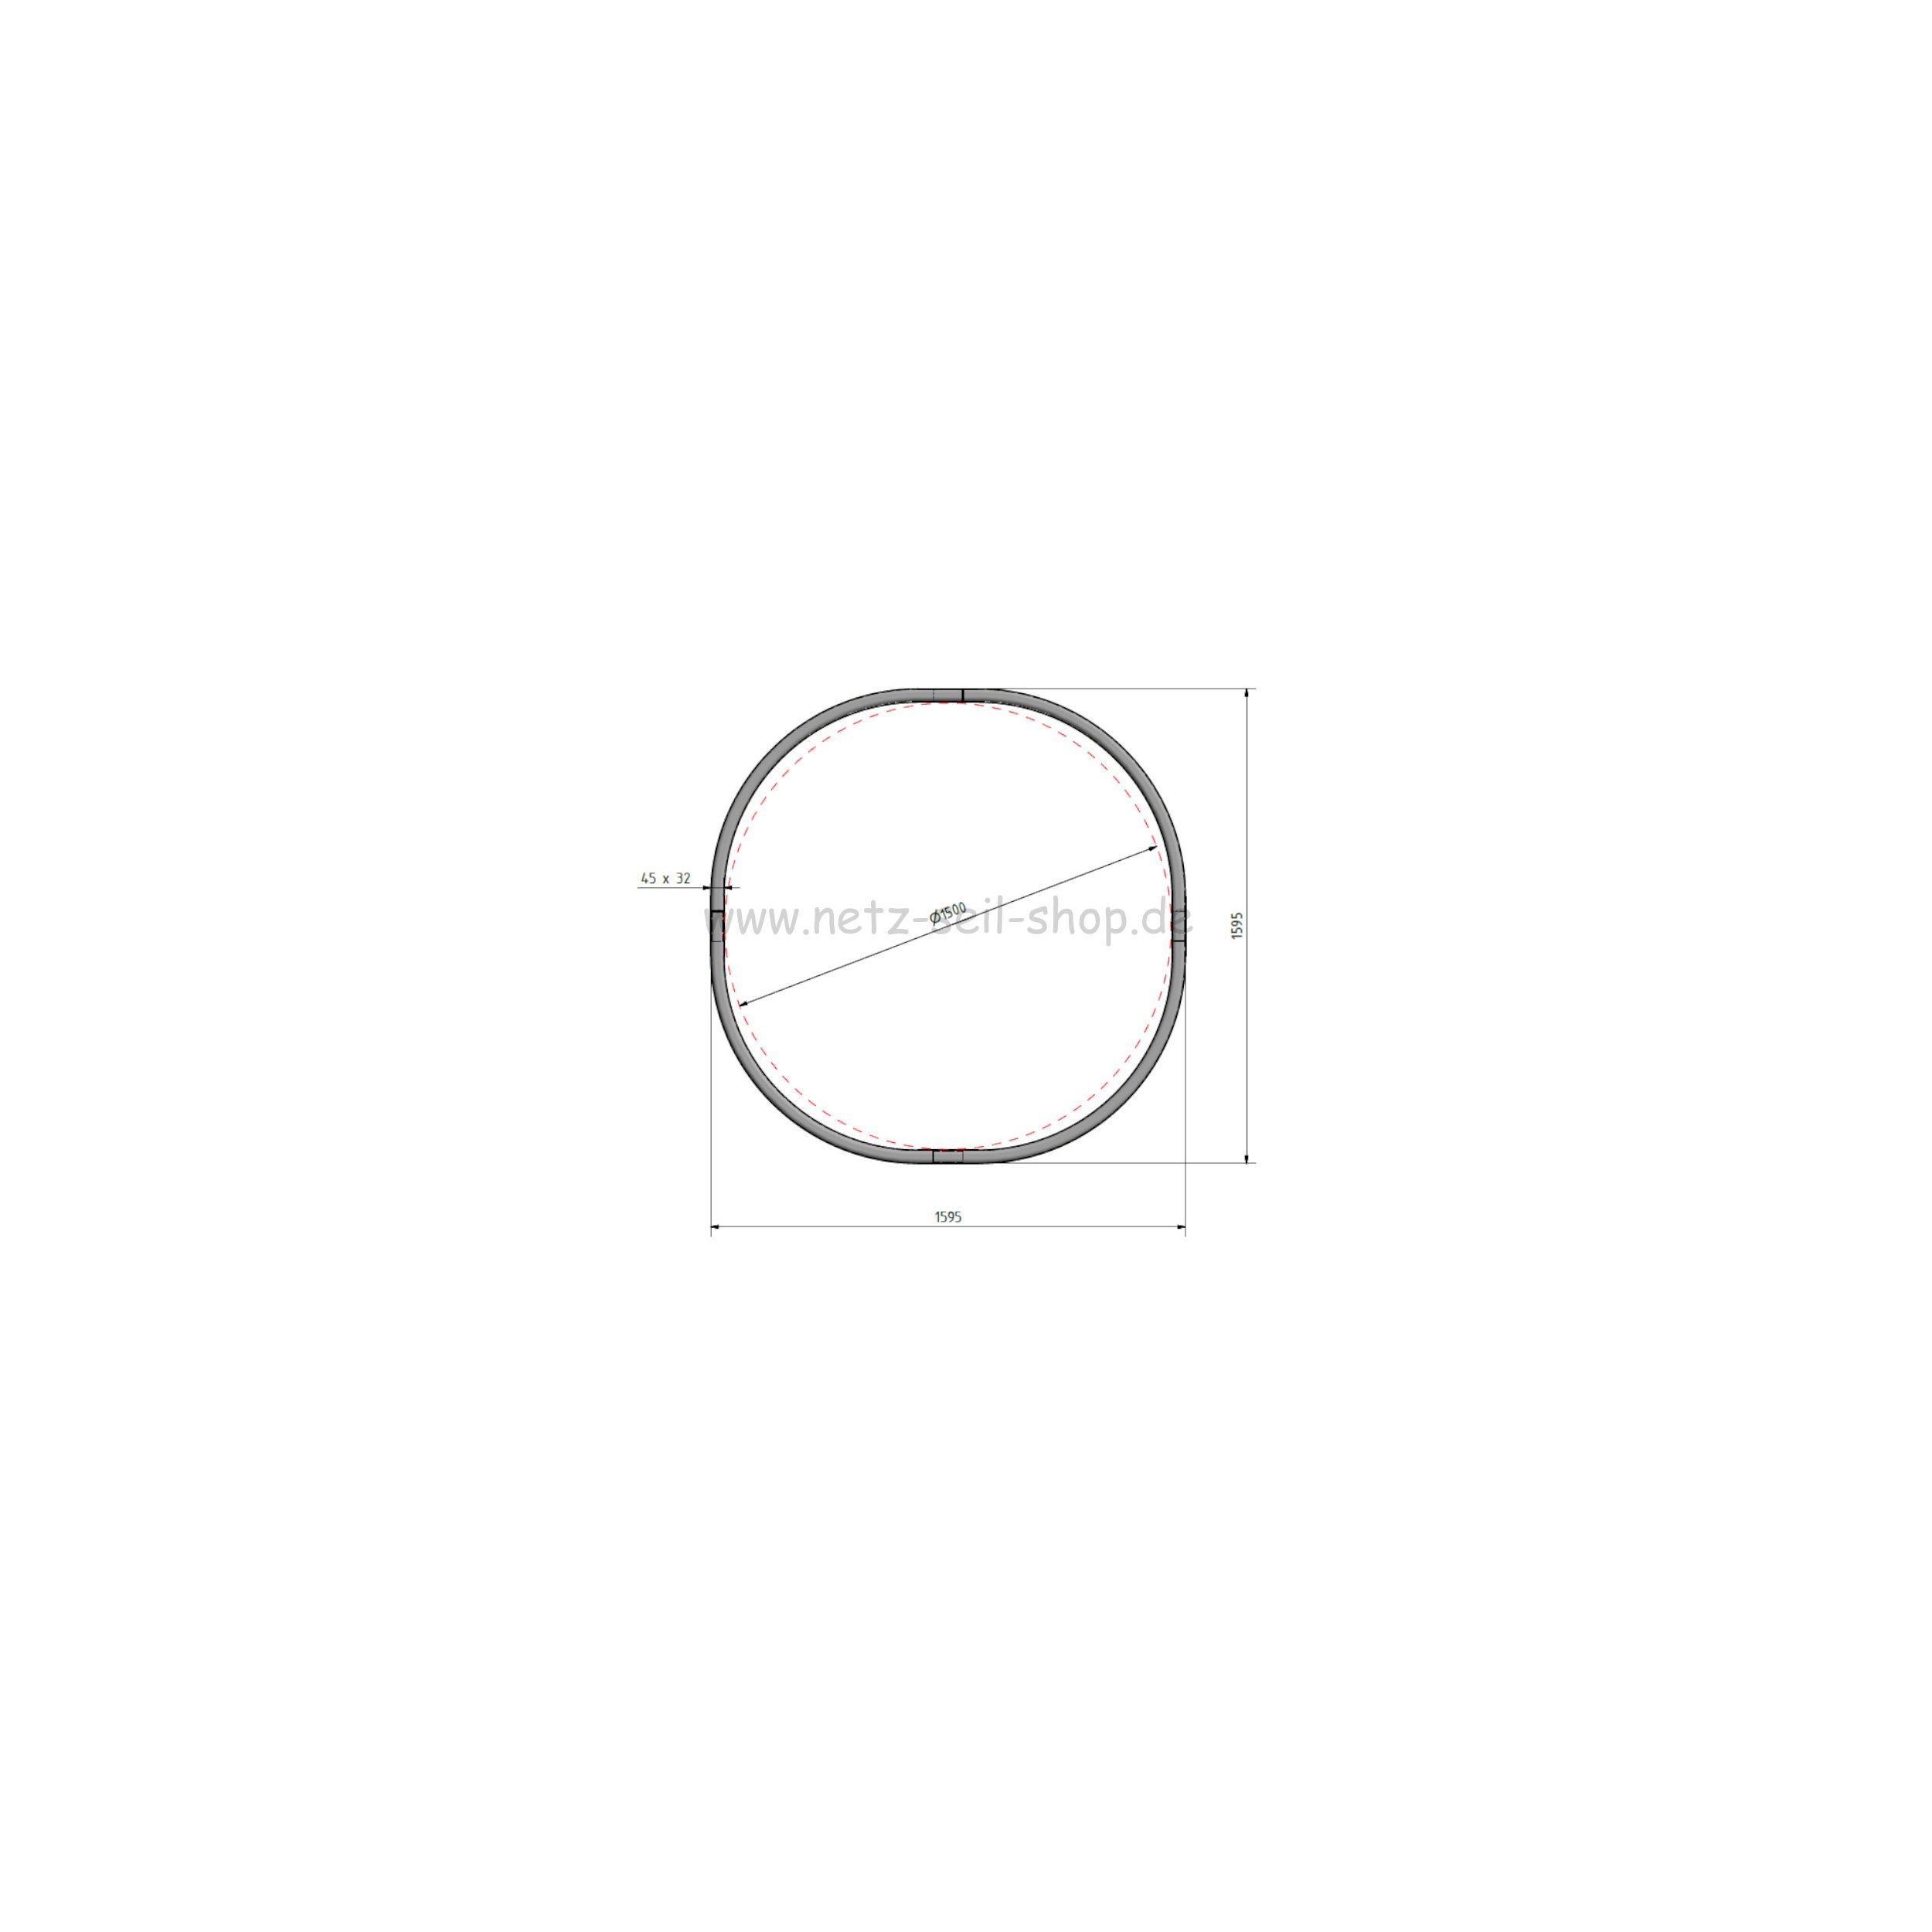 Kopie von Heunetz für Rundballen, 160 cm Durchmesser, Höhe 120cm,  Ø 5 mm Garn, # 80 mm Maschenweite ohne Ring